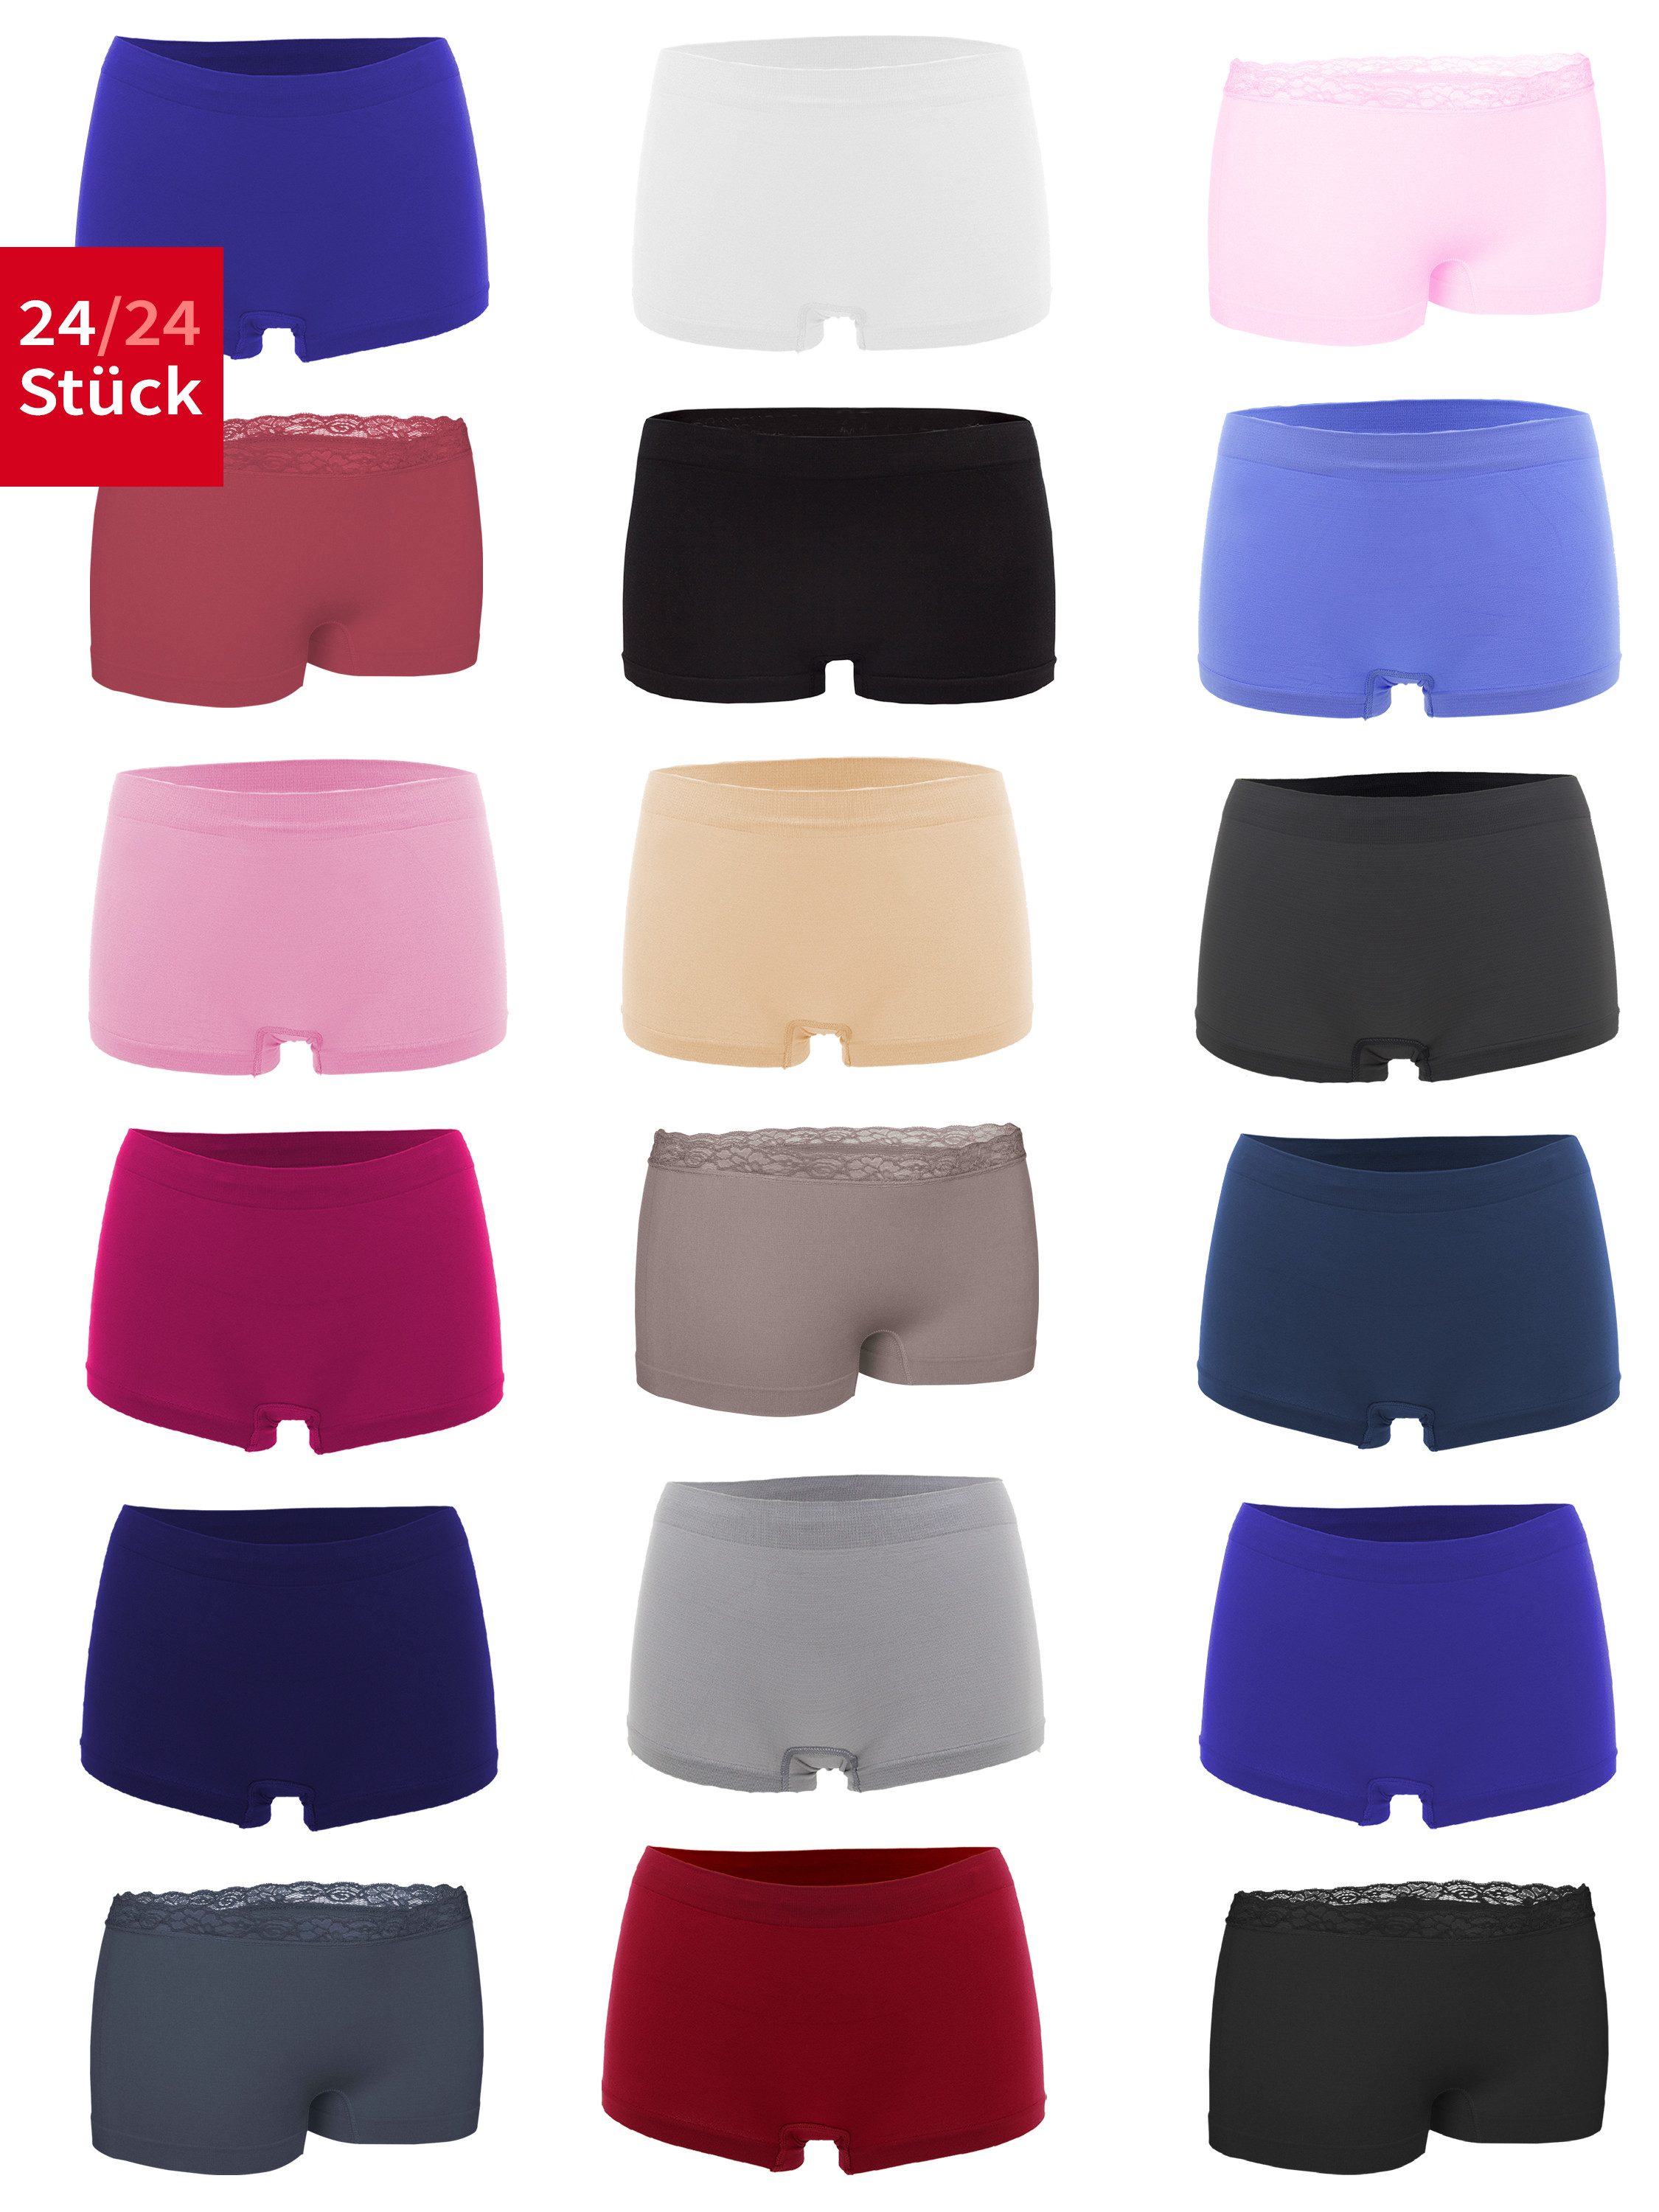 Fabio Farini Panty Damen Hotpants Unterhosen - Frauen Boxershorts Seamless (Spar-Set, 24-St) angenehmes Tragegefühl ohne Nähte, zufällig ausgewählte Farben